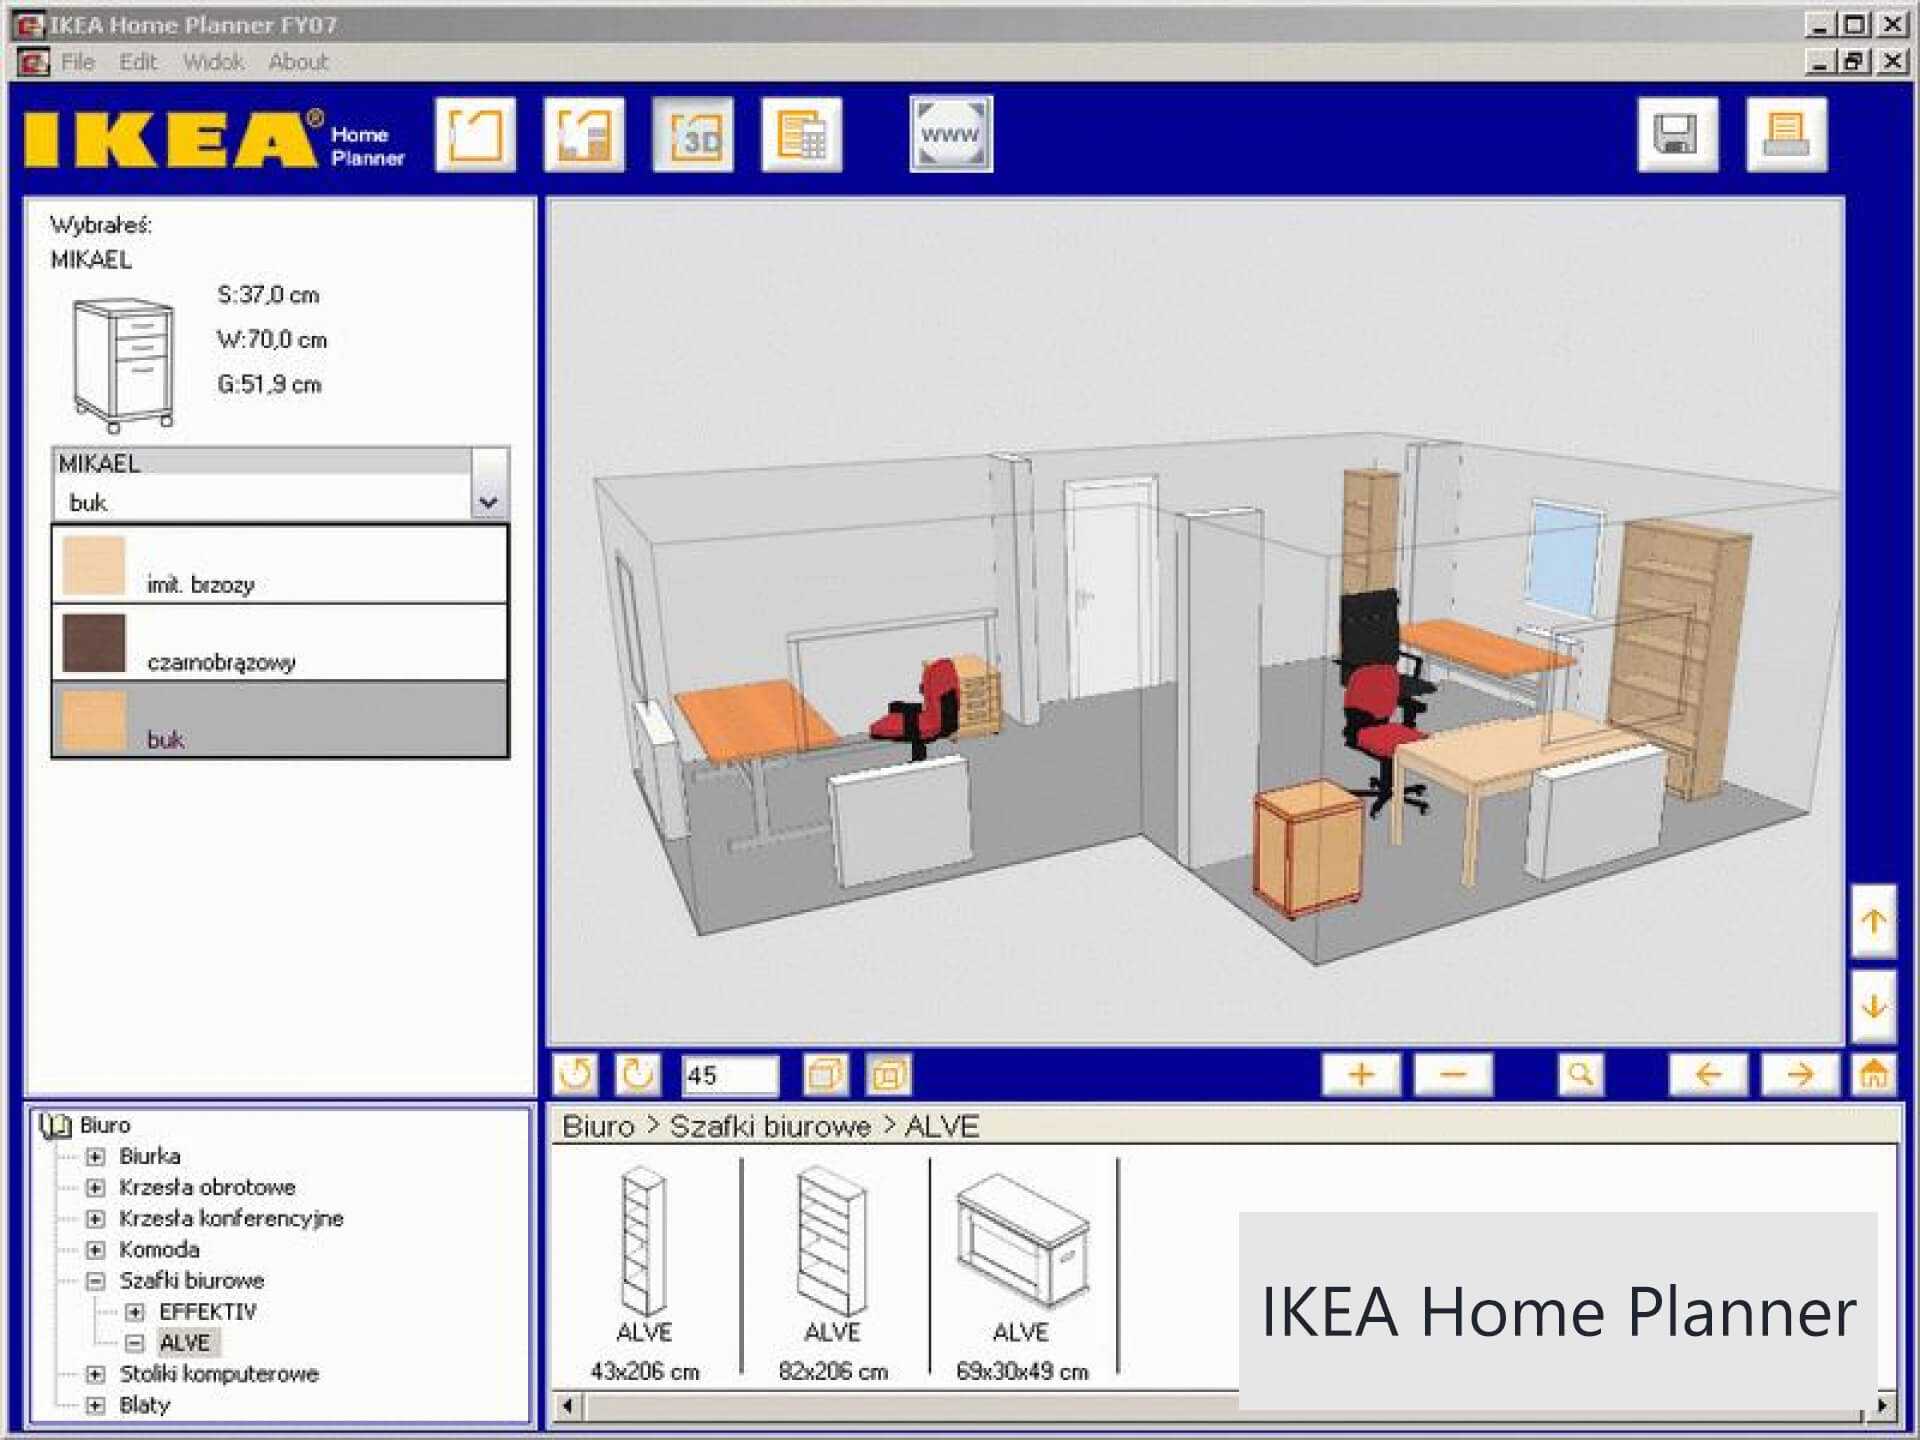 Дизайн интерьера 3d - обзор программ для проектирования интерьера